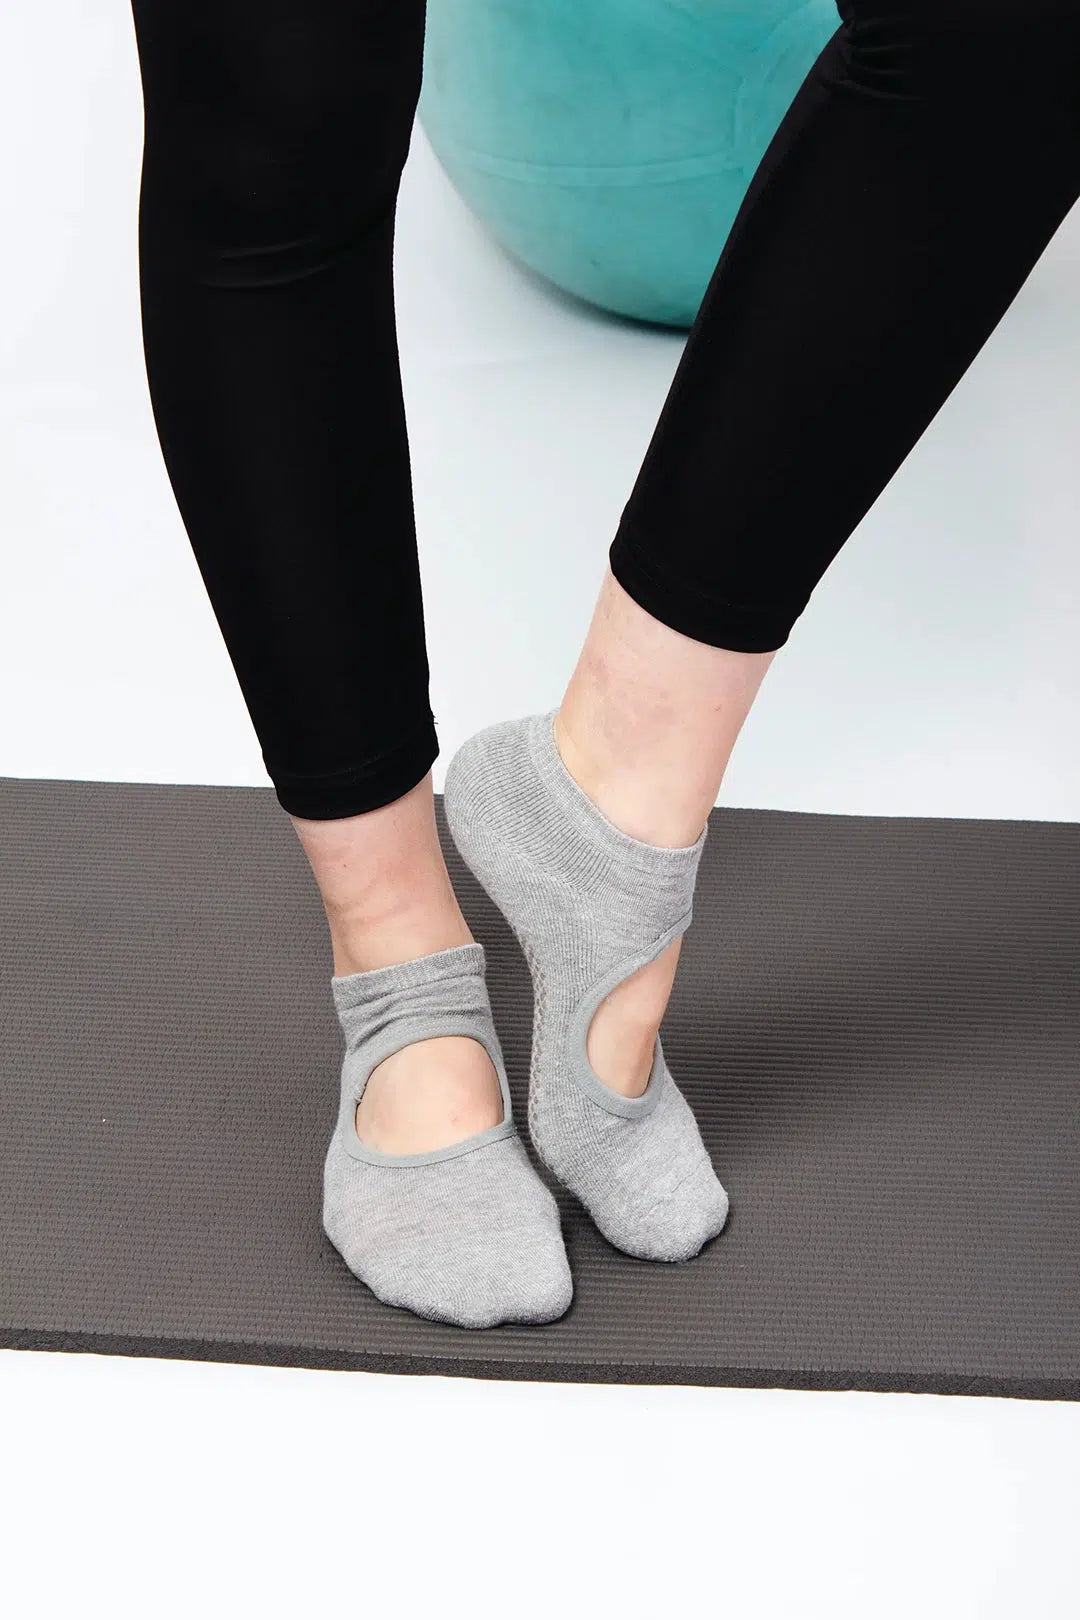 QESSUVNC Reformer Grip Socks Pilates Socks Yoga Socks for Women